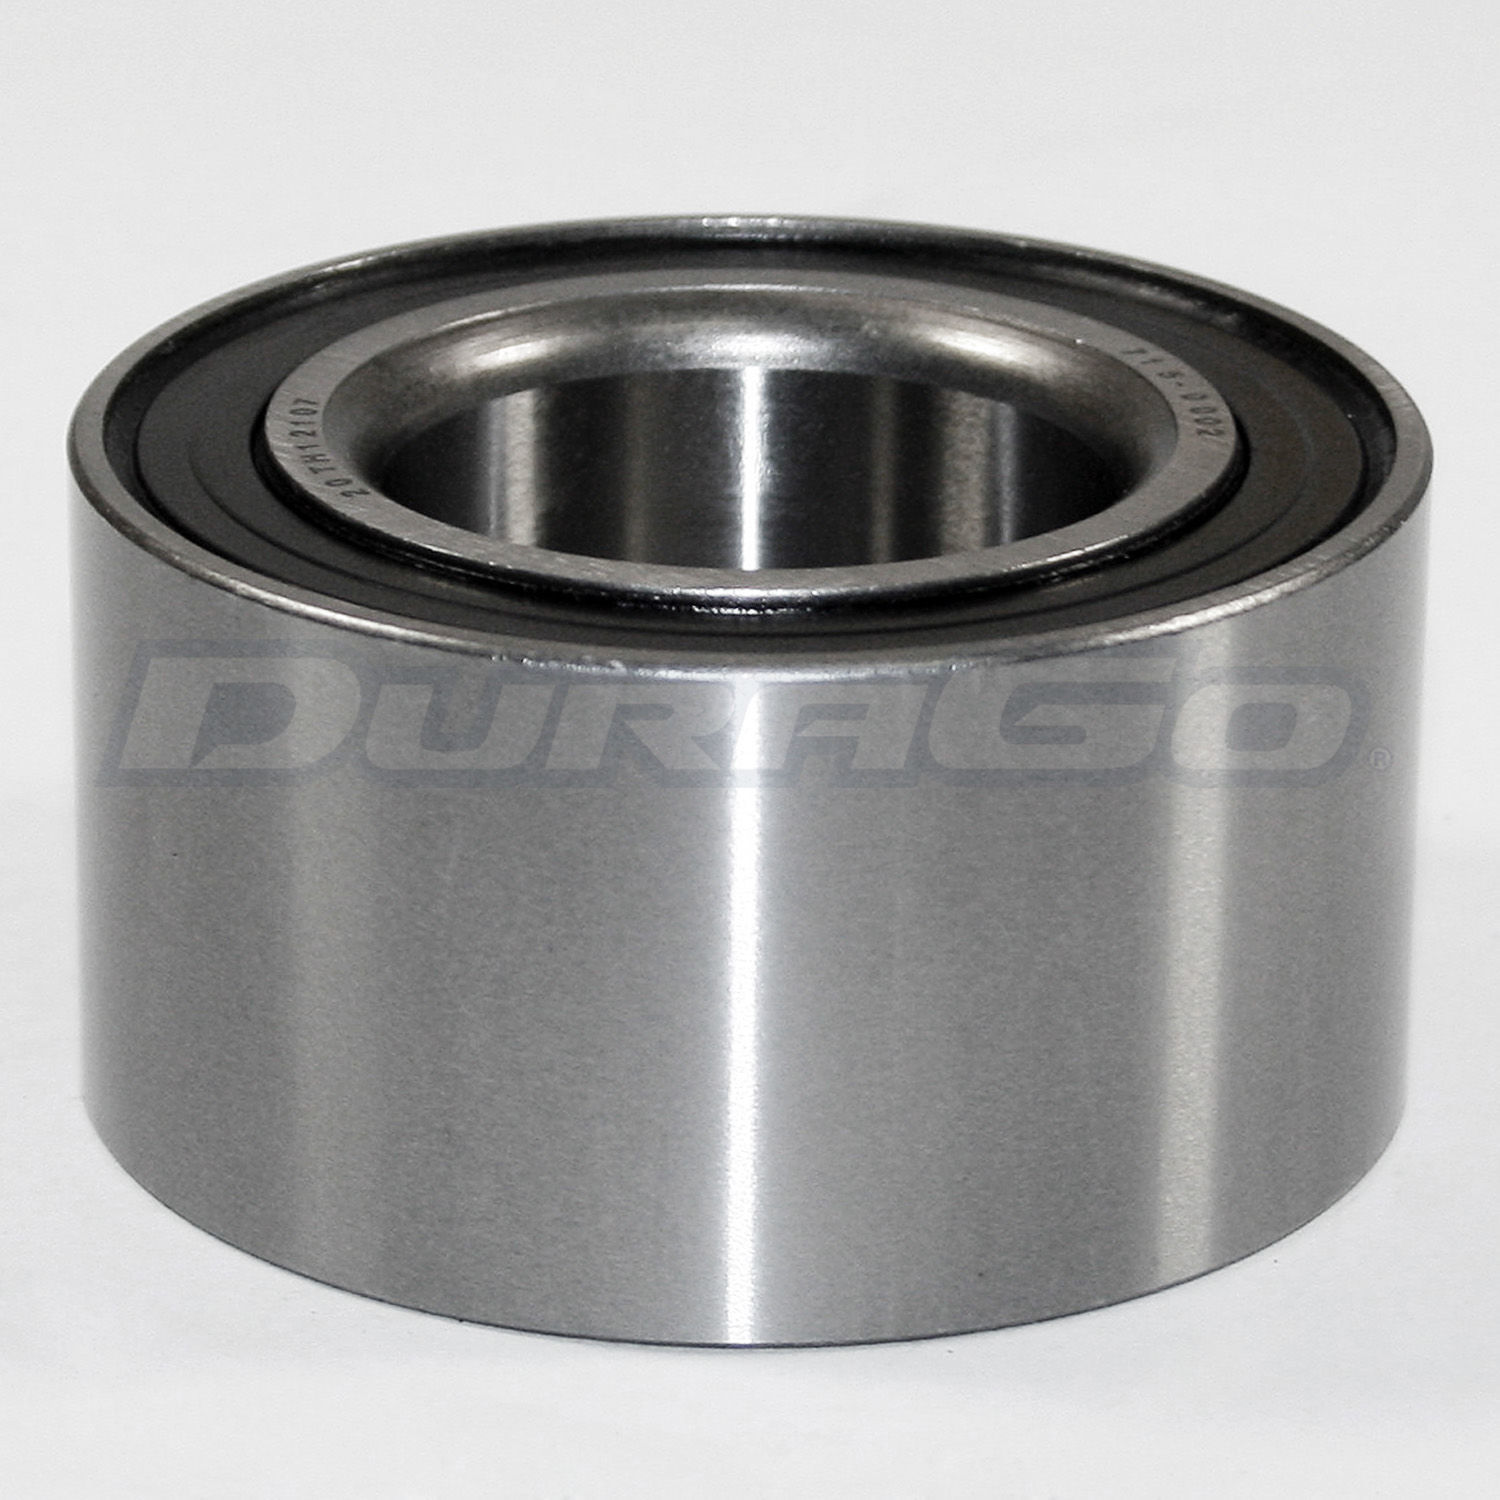 DURAGO - Wheel Bearing - D48 295-13113